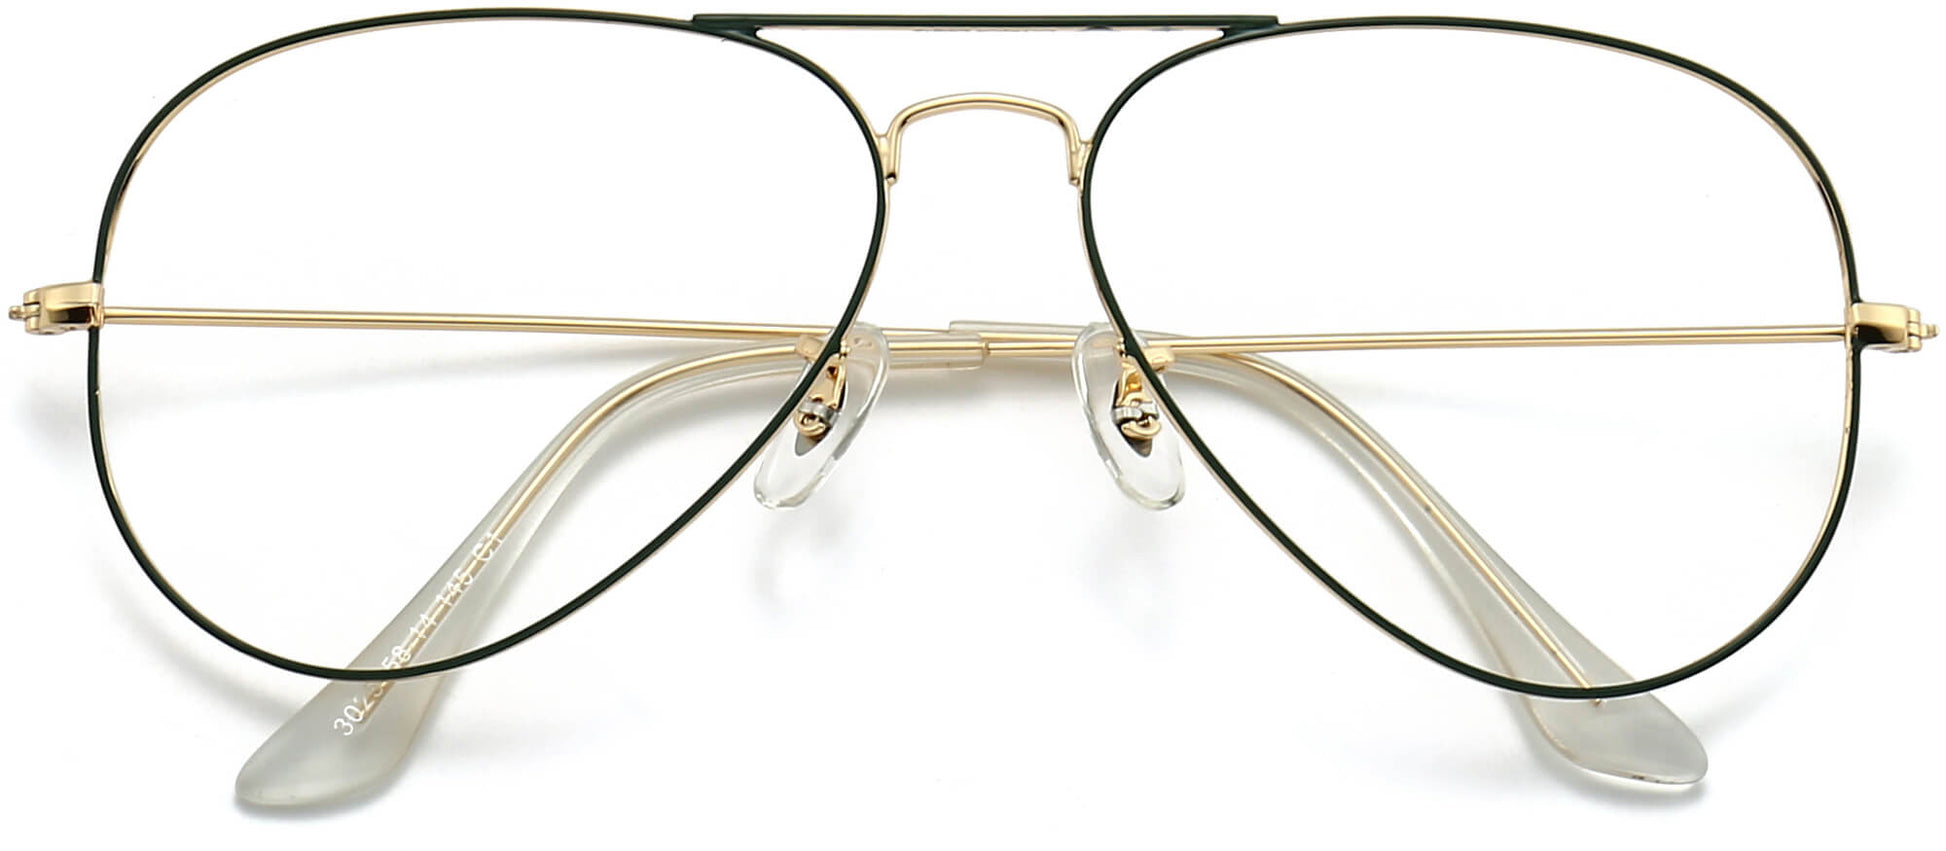 Zymirah Aviator black Eyeglasses rom ANRRI, closed view